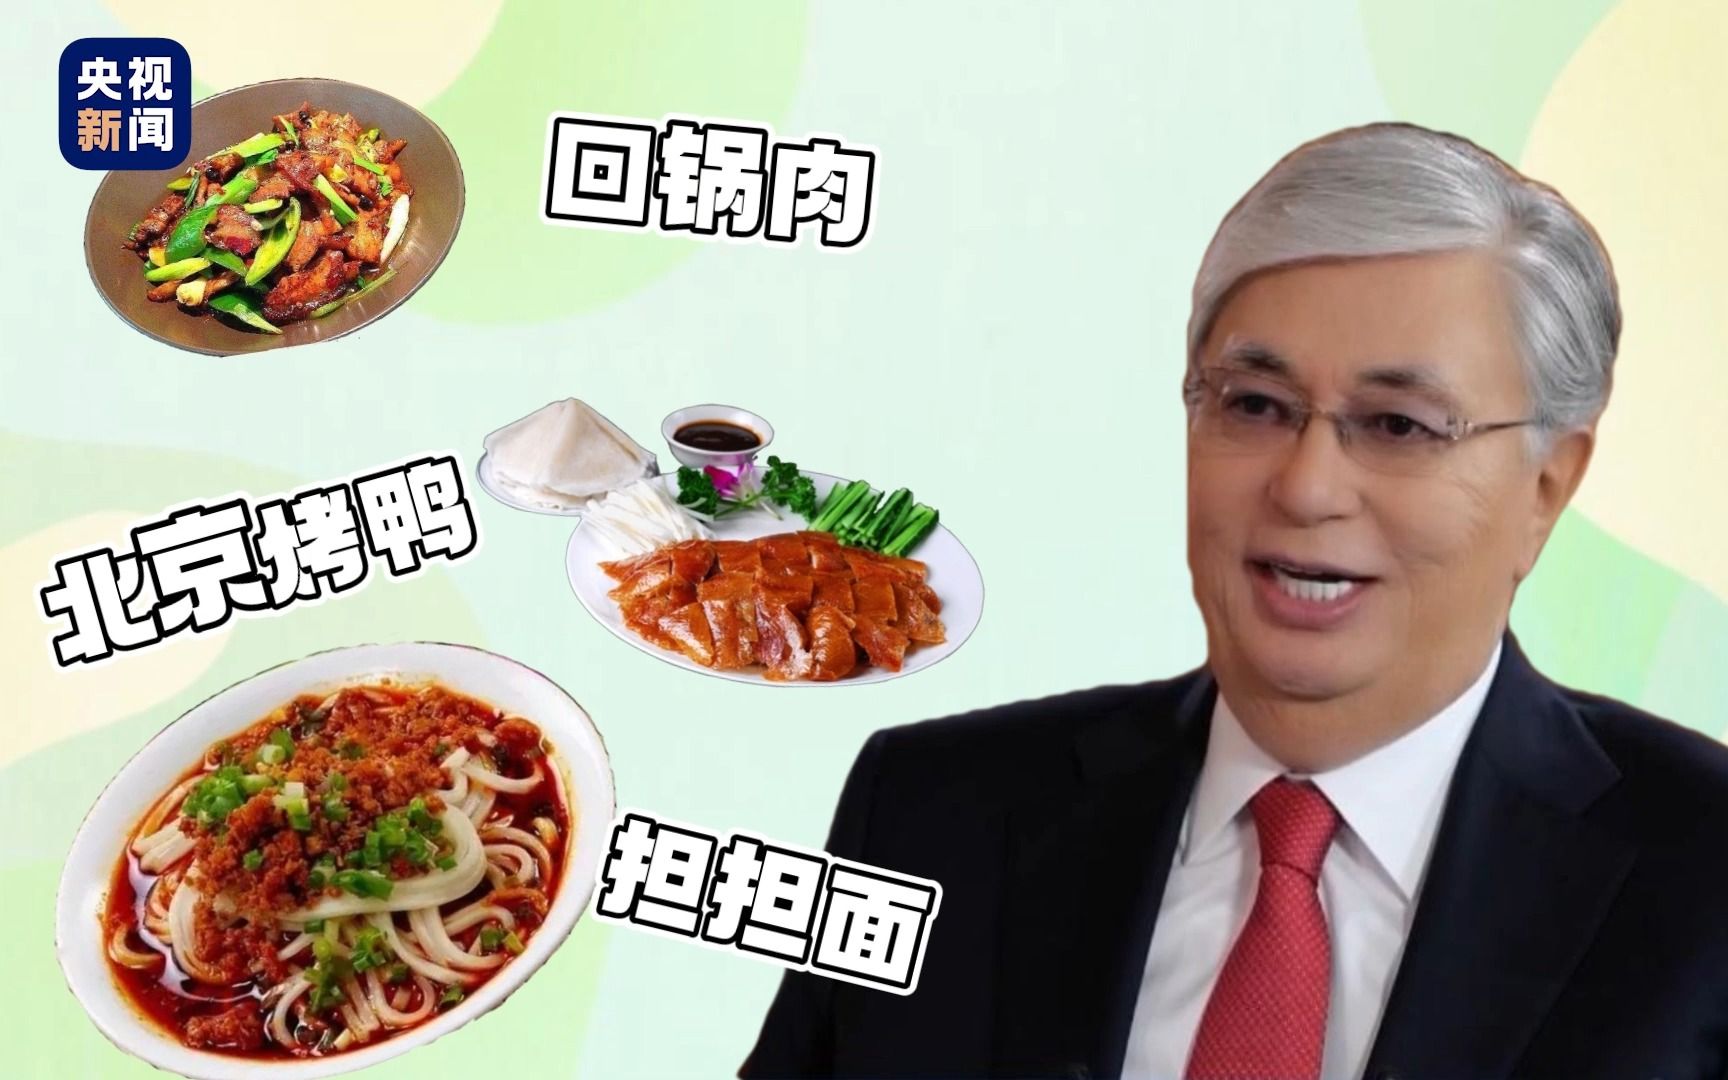 爱吃回锅肉 “中文八级”的哈萨克斯坦总统